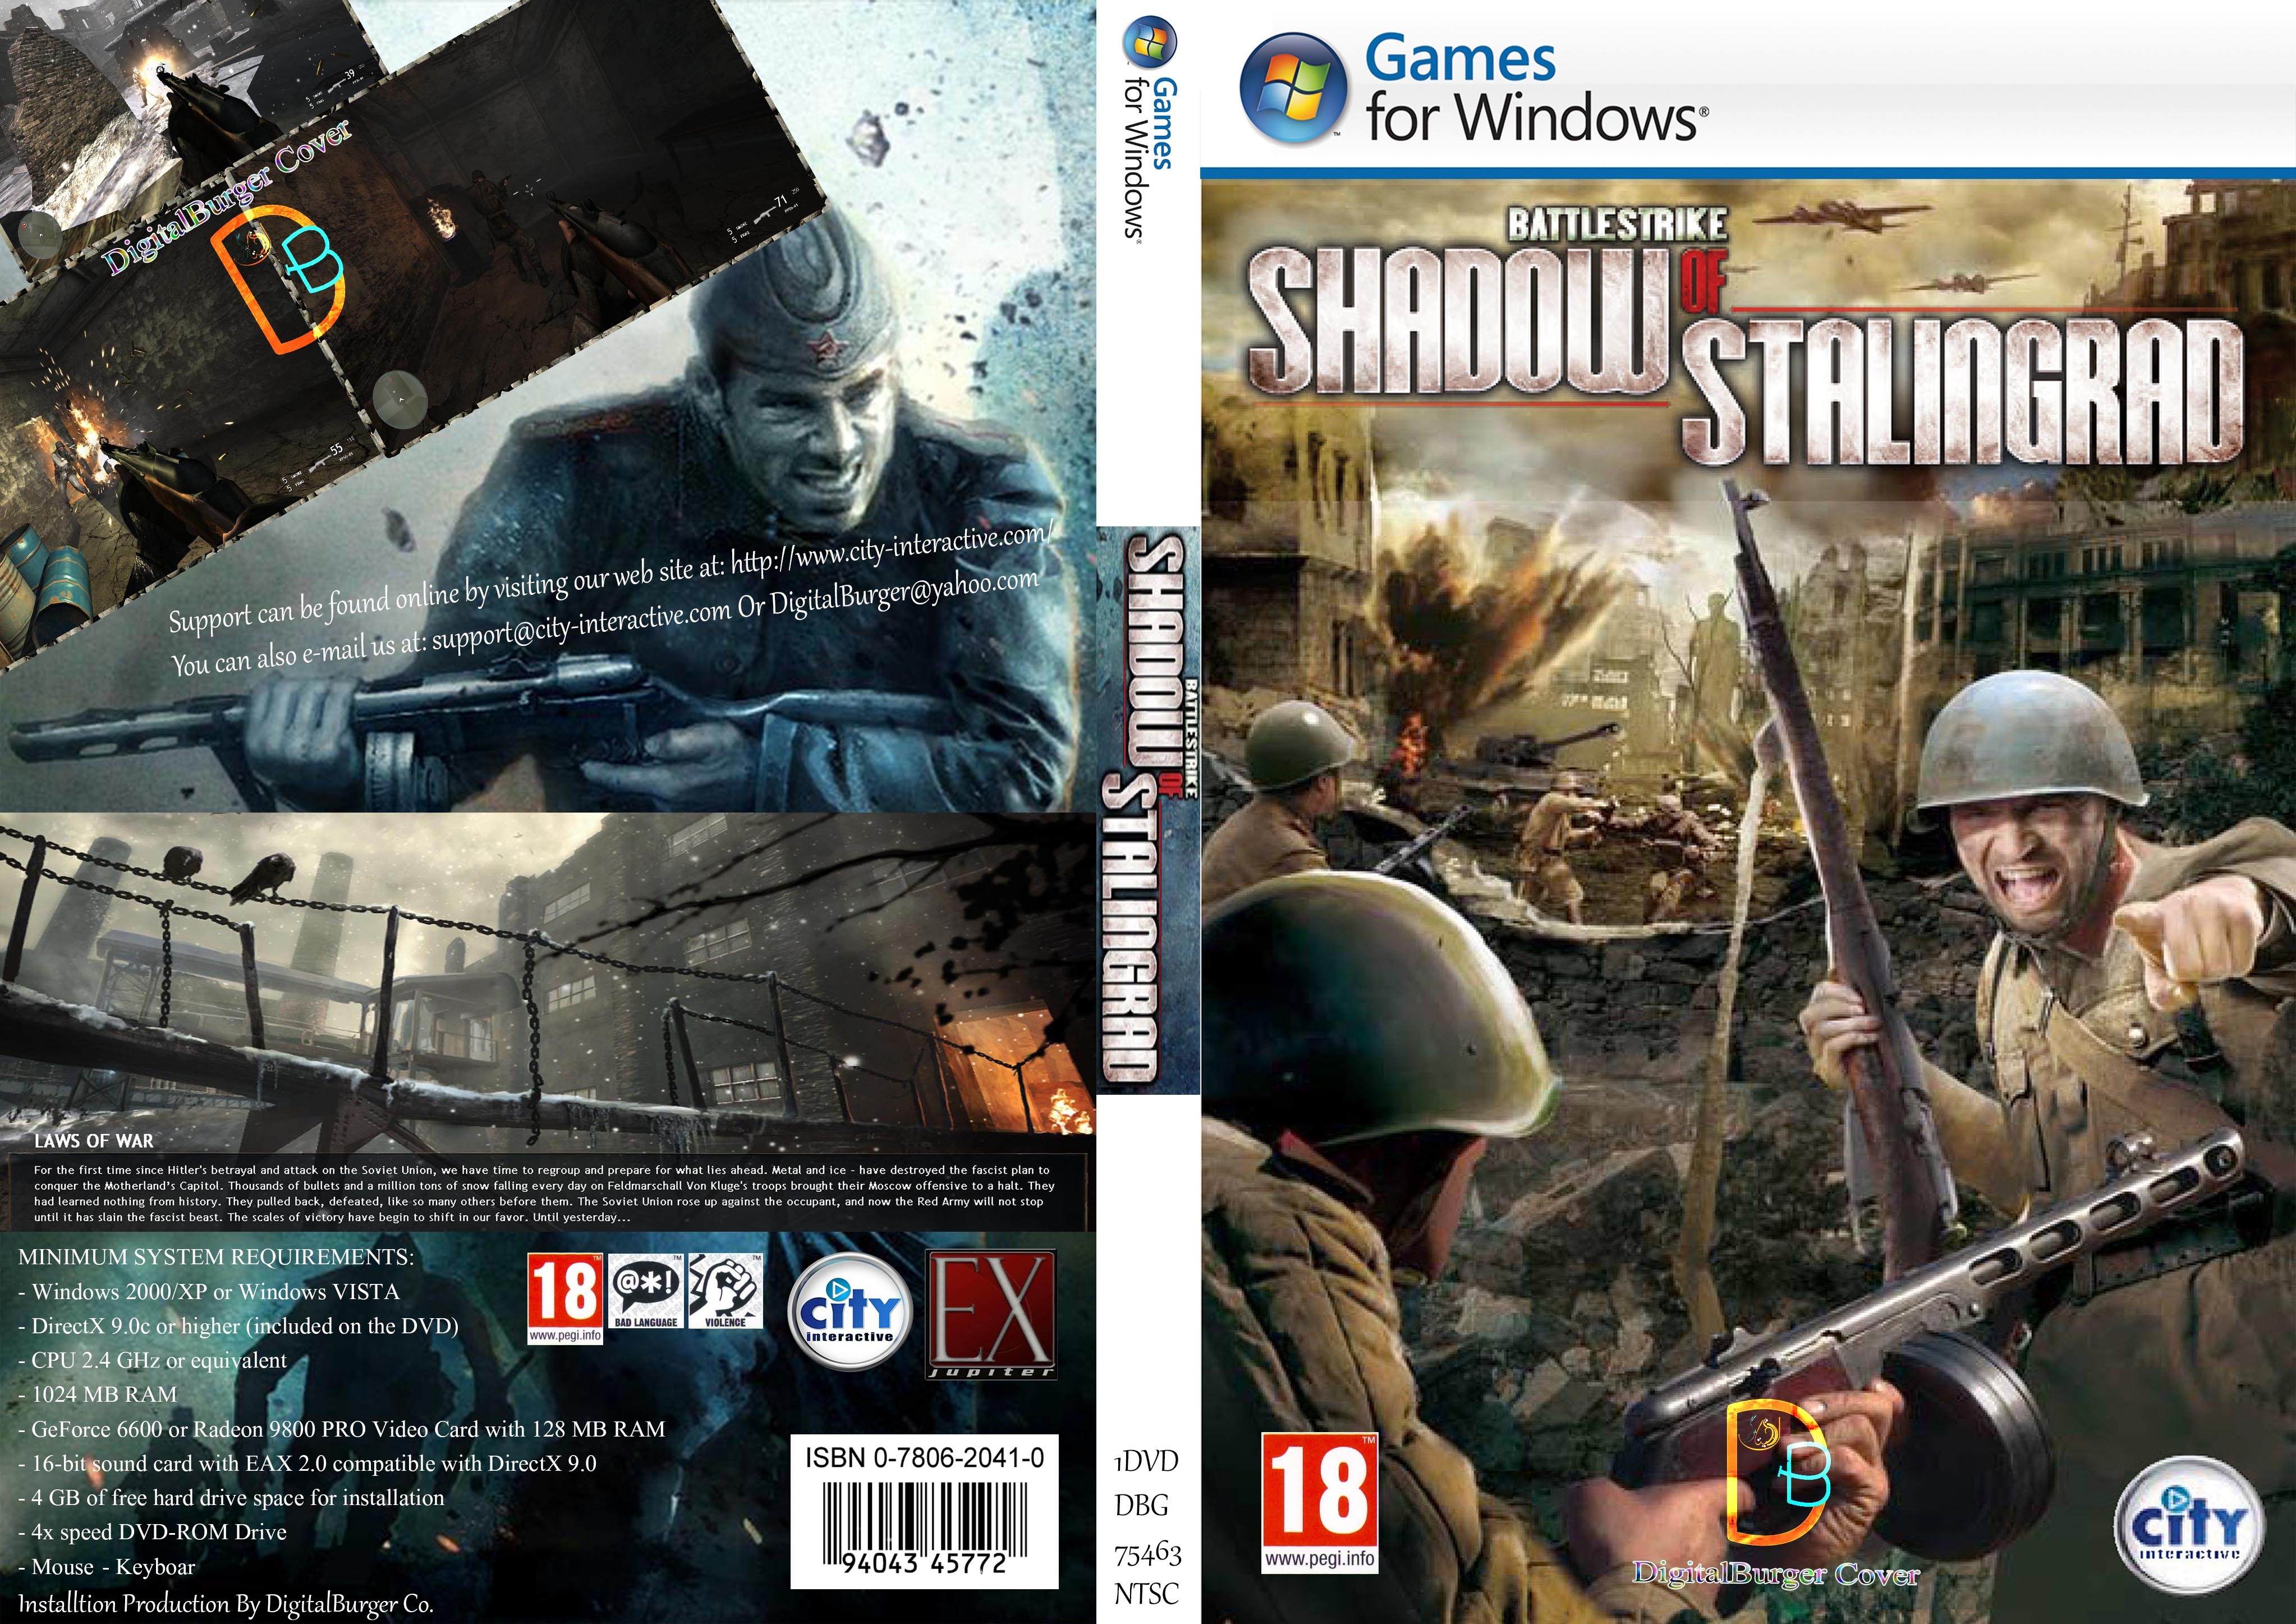 BattleStrike Shadow of Stalingrad DB Cover box cover